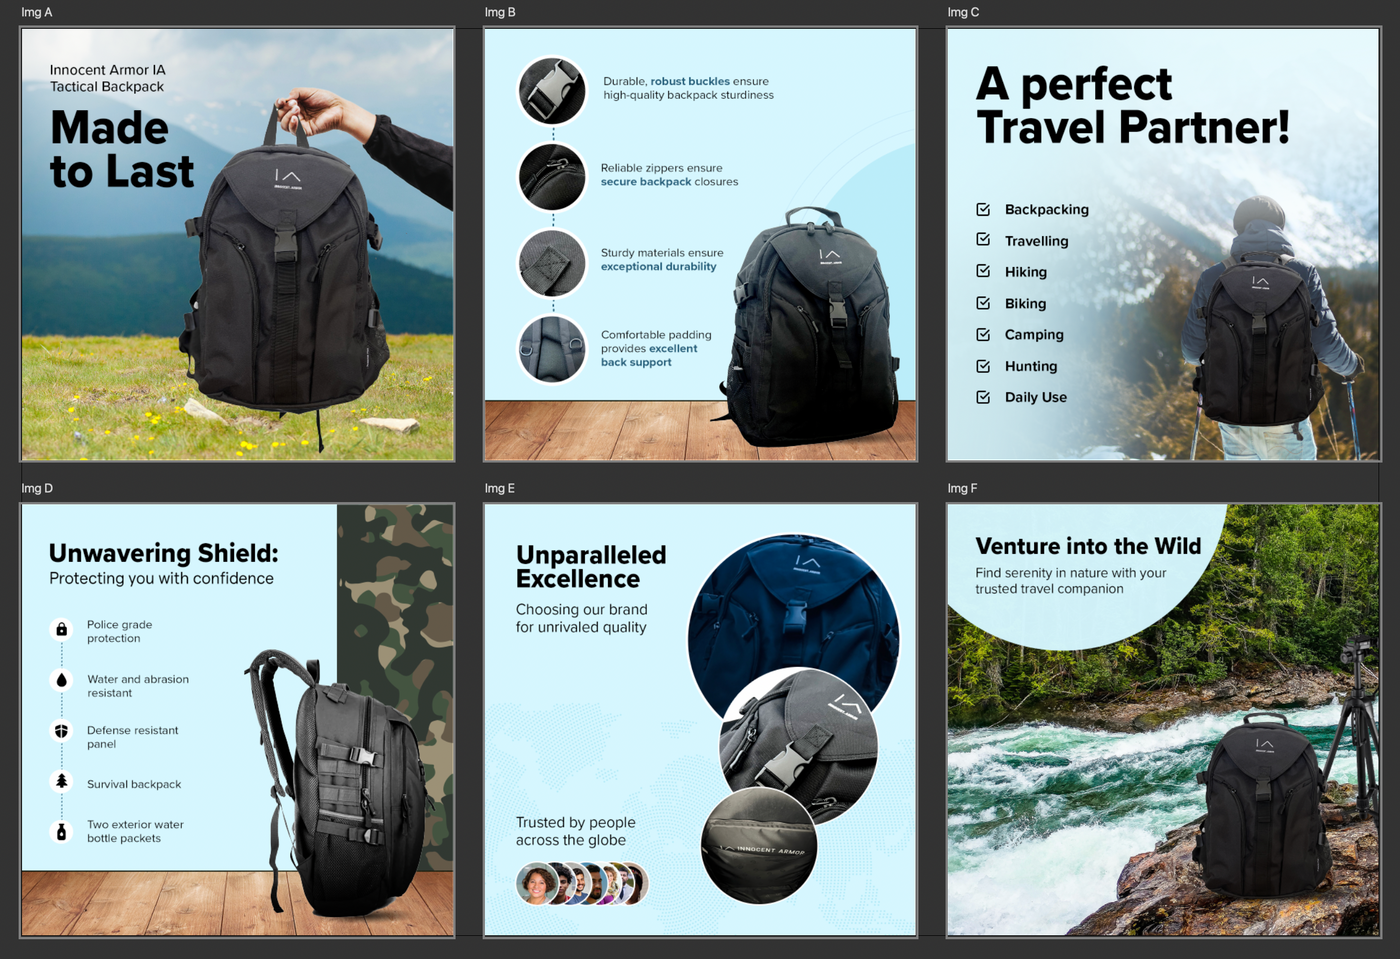 Bulletproof Durable Essentials Backpack